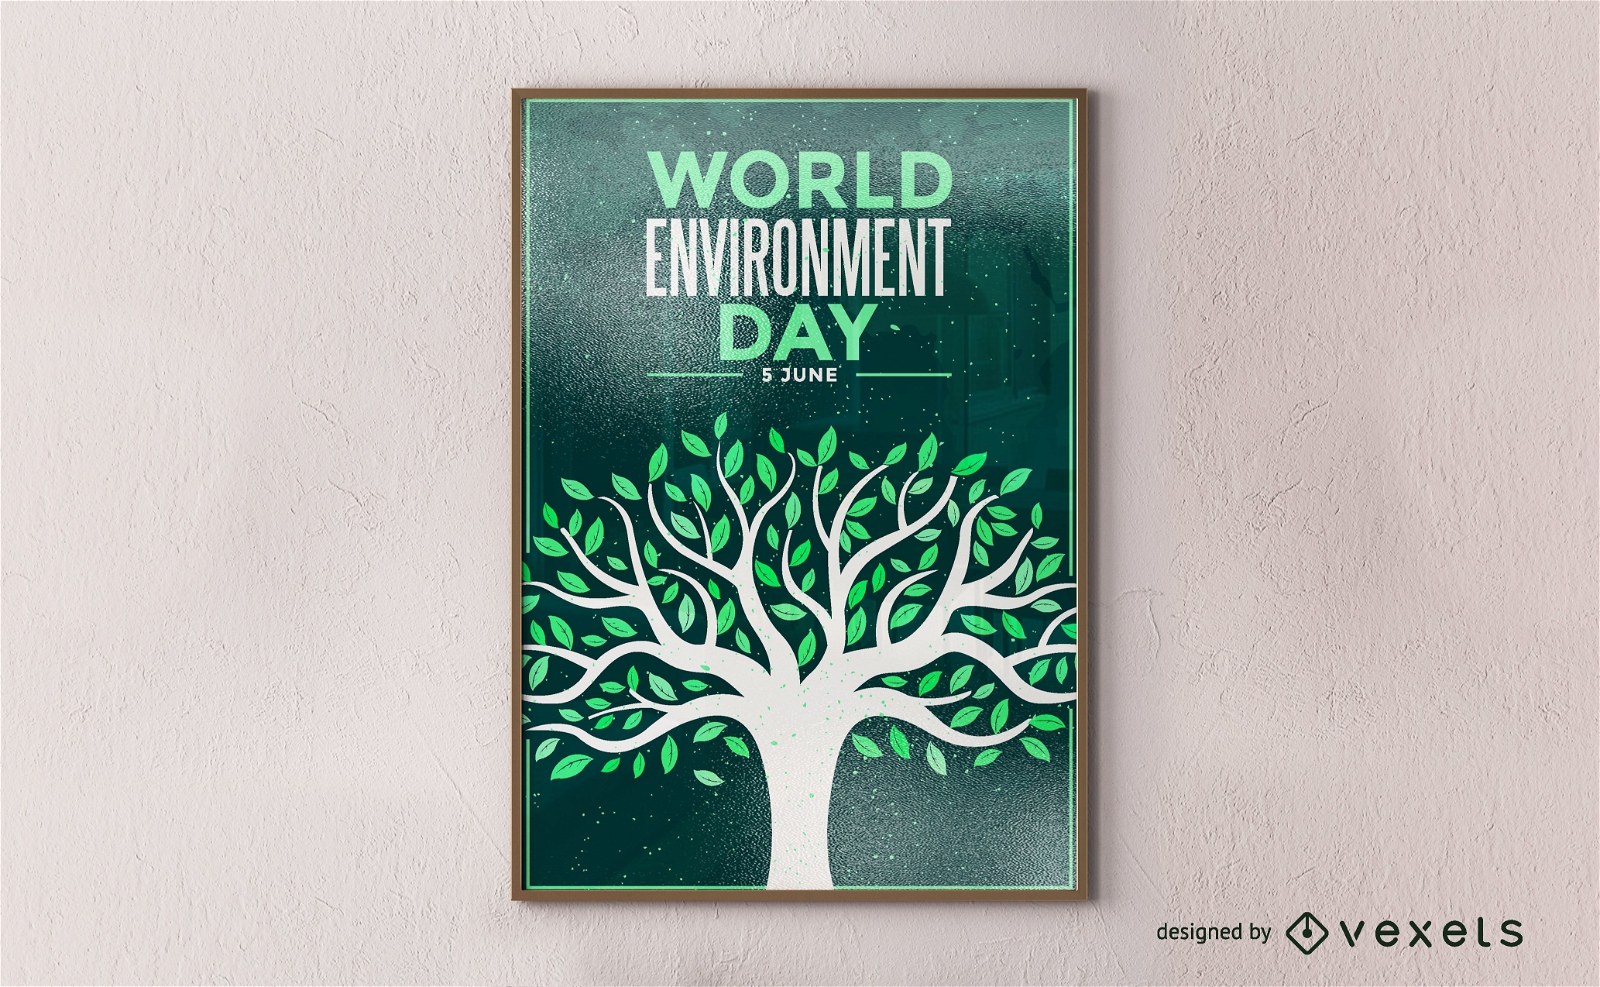 P?ster do Dia Mundial do Meio Ambiente